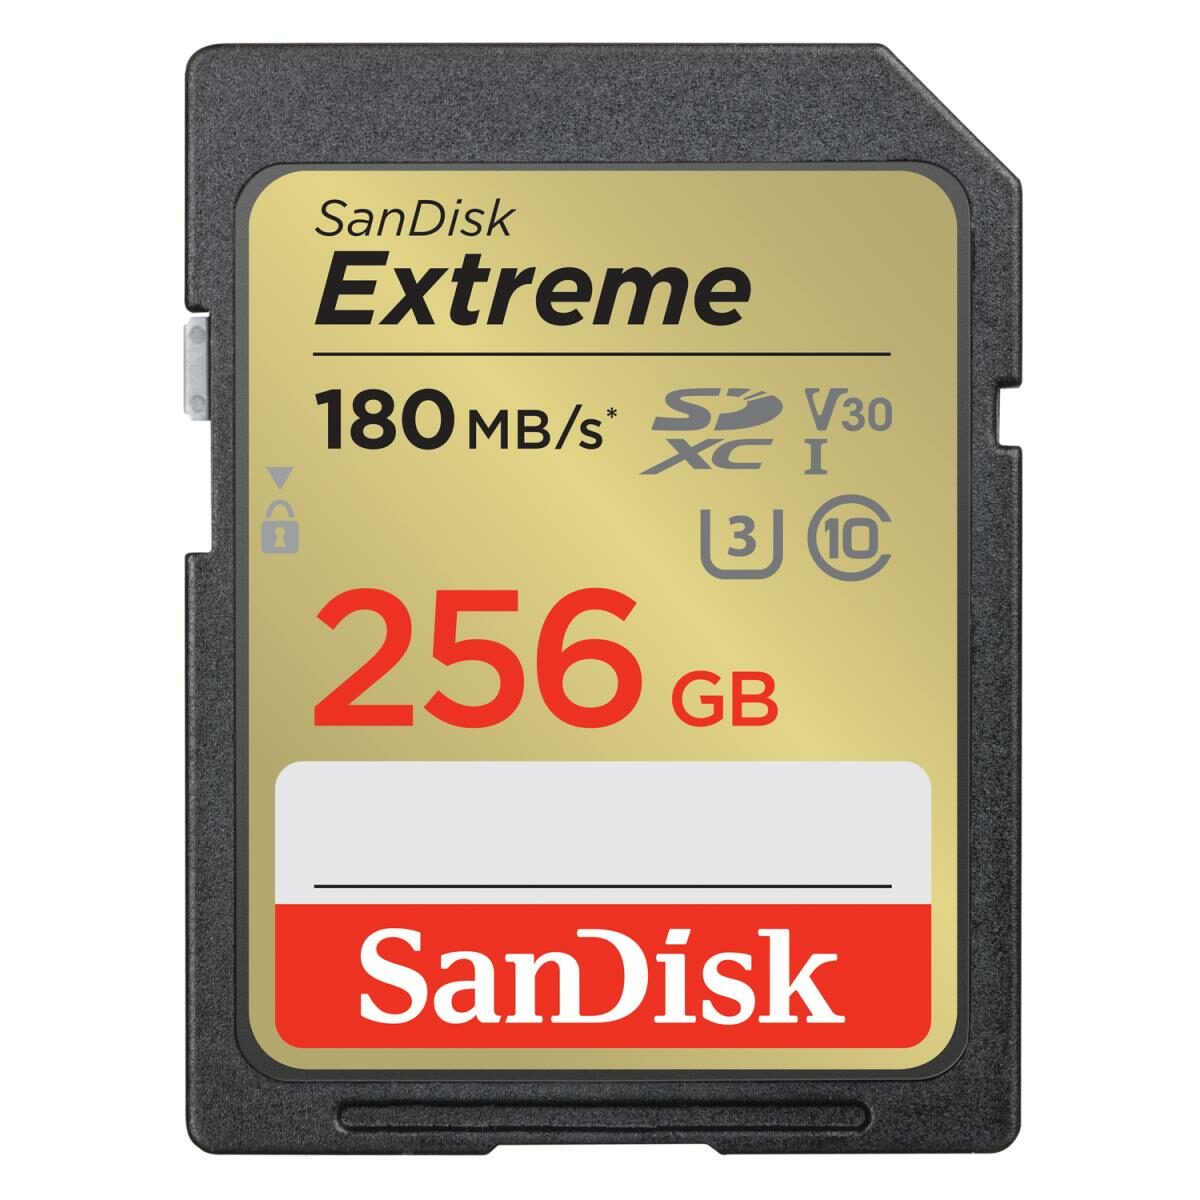 SanDisk Extreme SDHC Memory Card UHS-I U3 V30